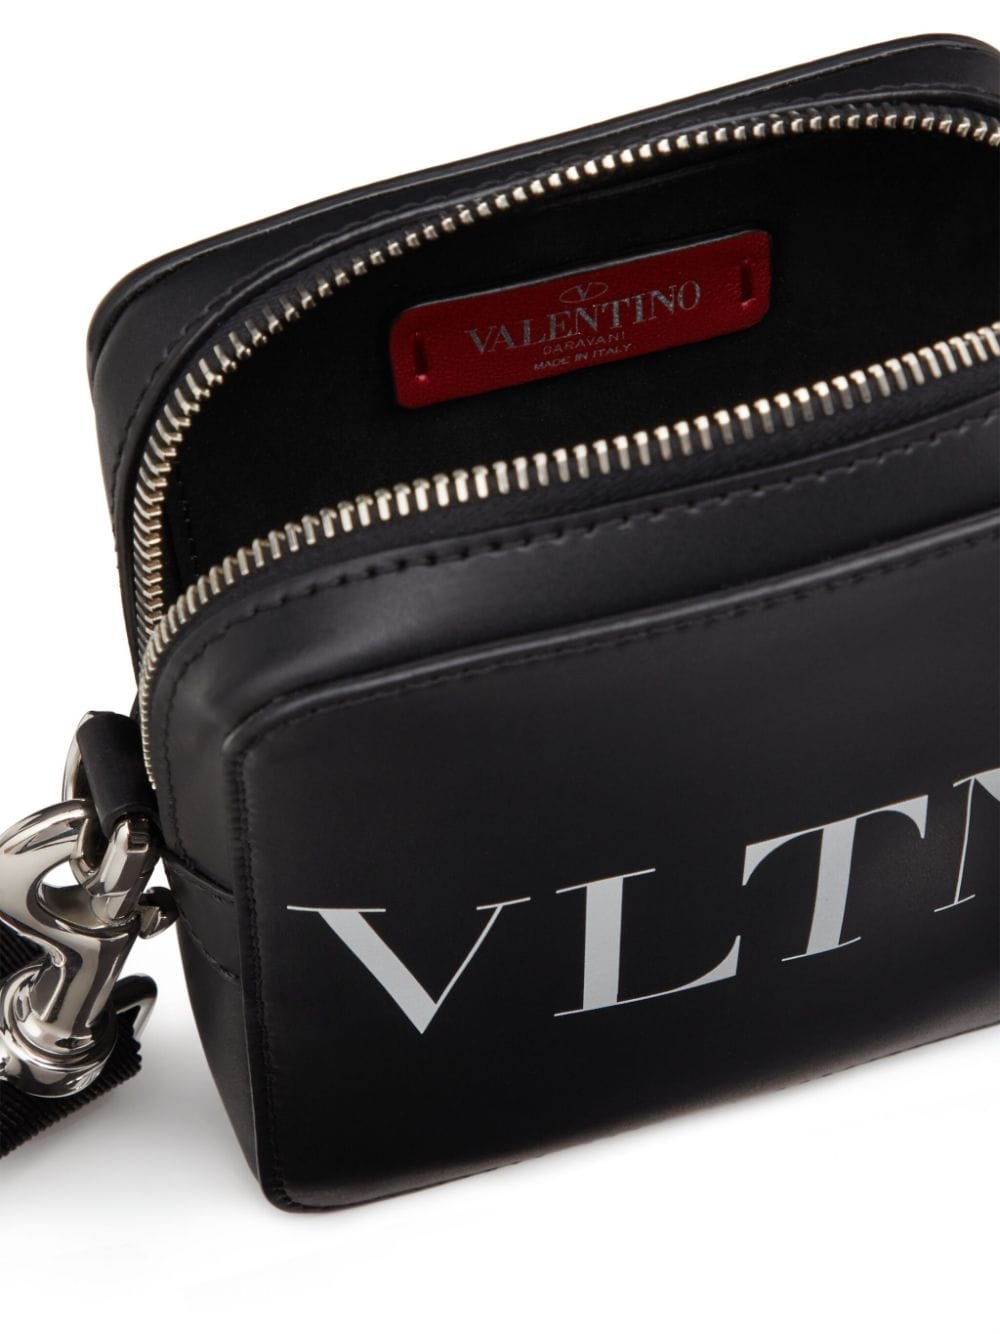 Small VLTN messenger bag<BR/><BR/><BR/>